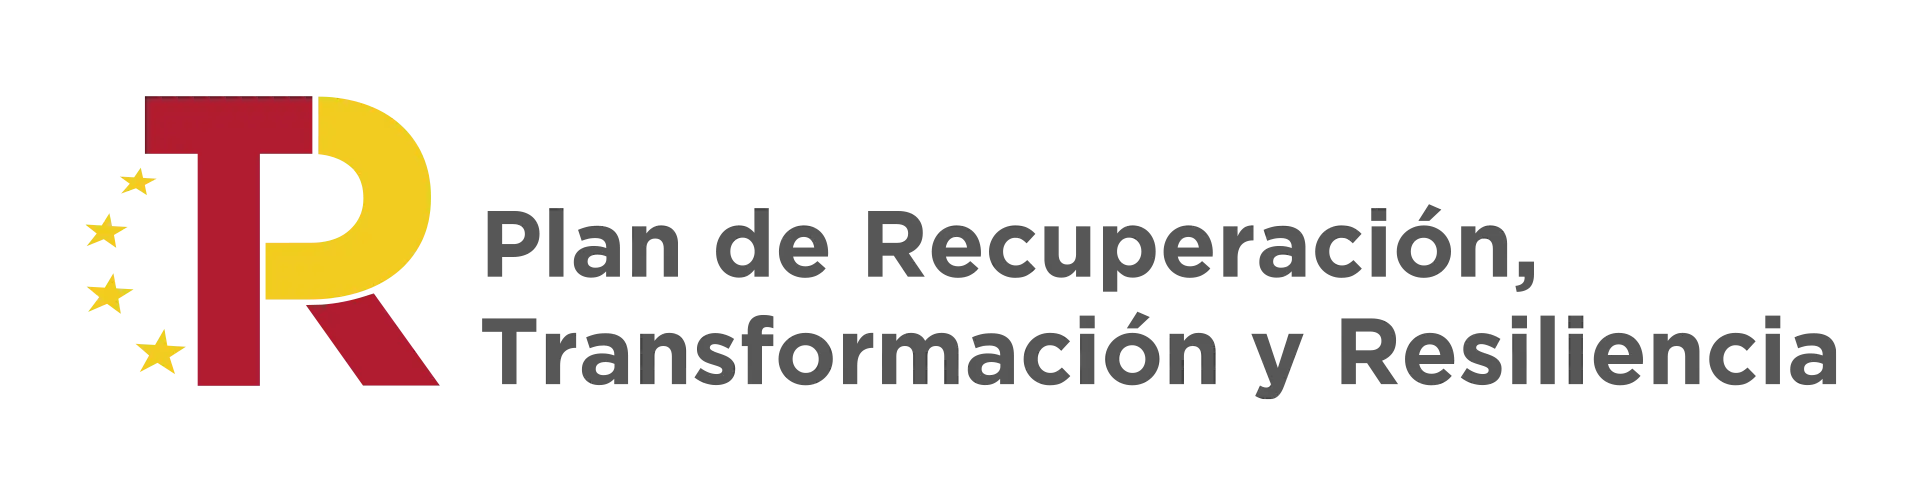 Logotipo del Plan de Recuperación para la Transformación y Resiliencia